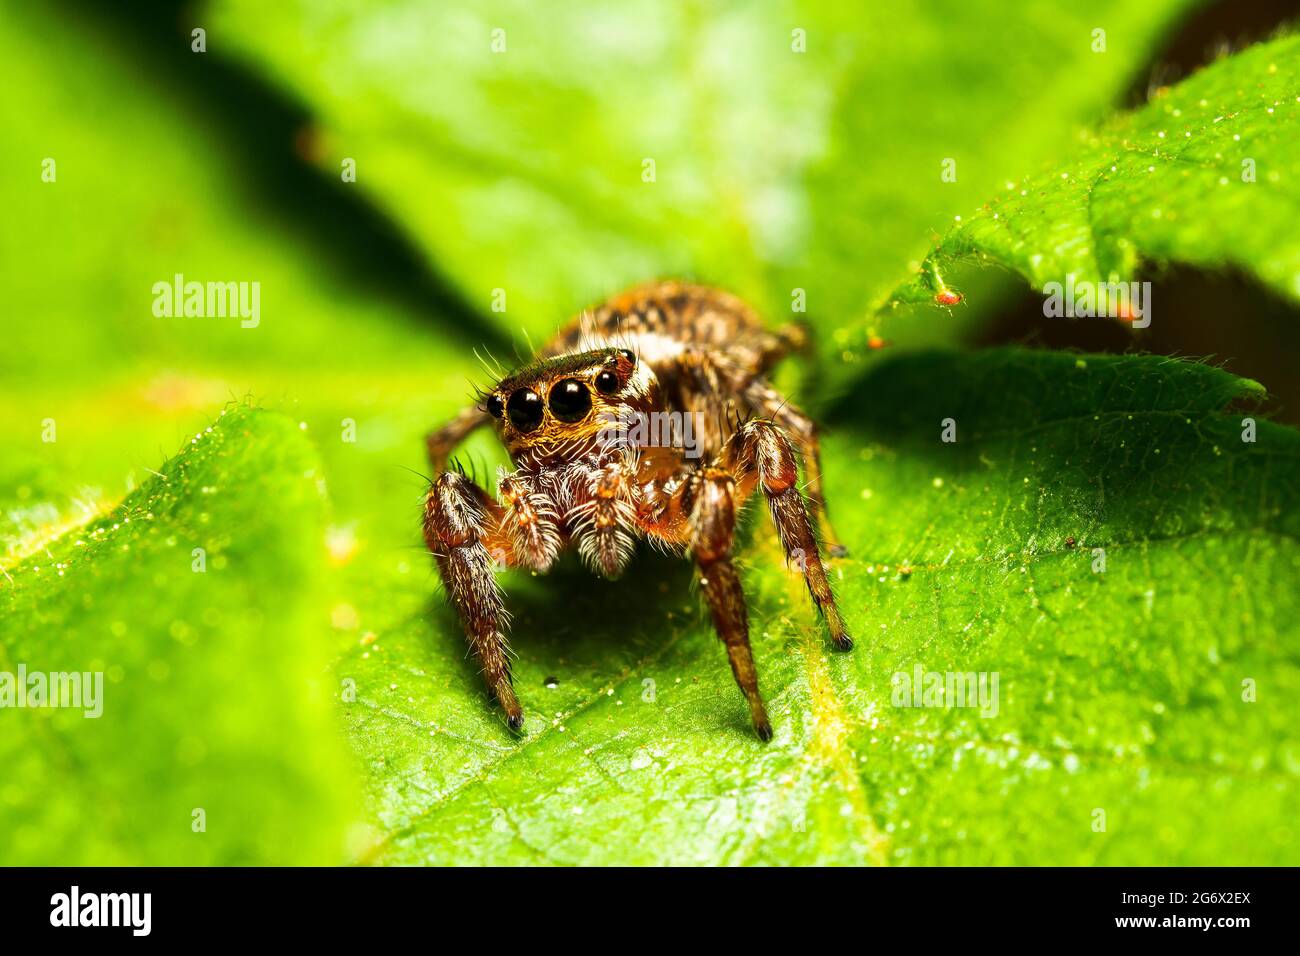 Jumpimg Asianellus festívus (araignée) - Italie Banque D'Images